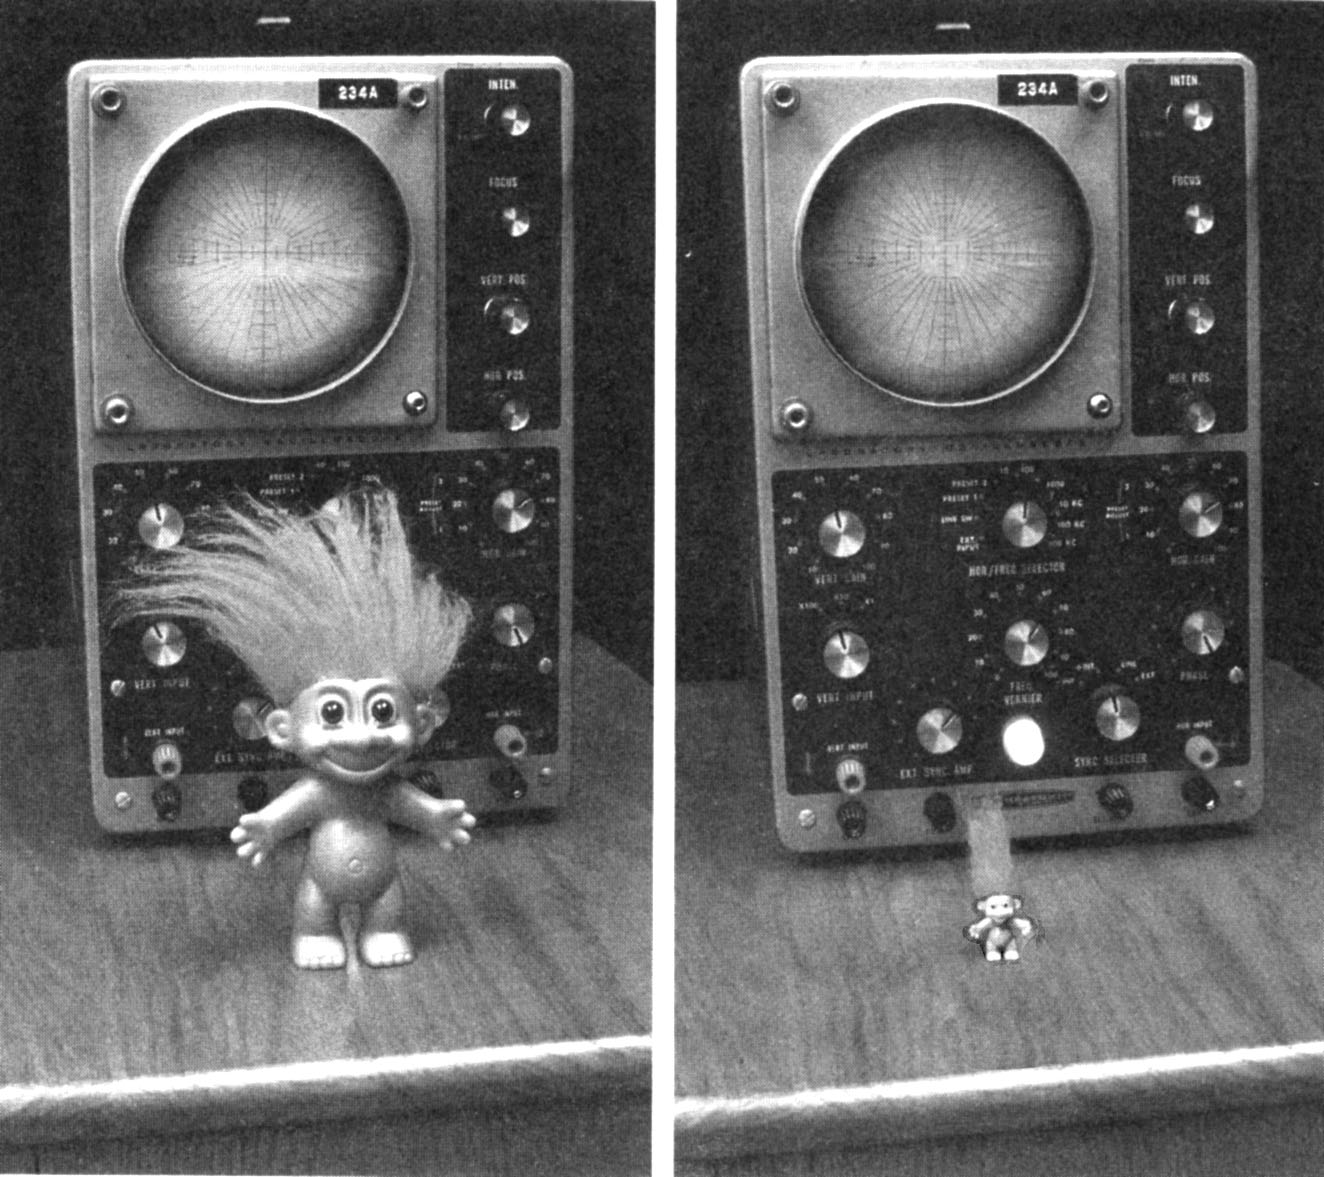 a tiny troll by an oscilloscope